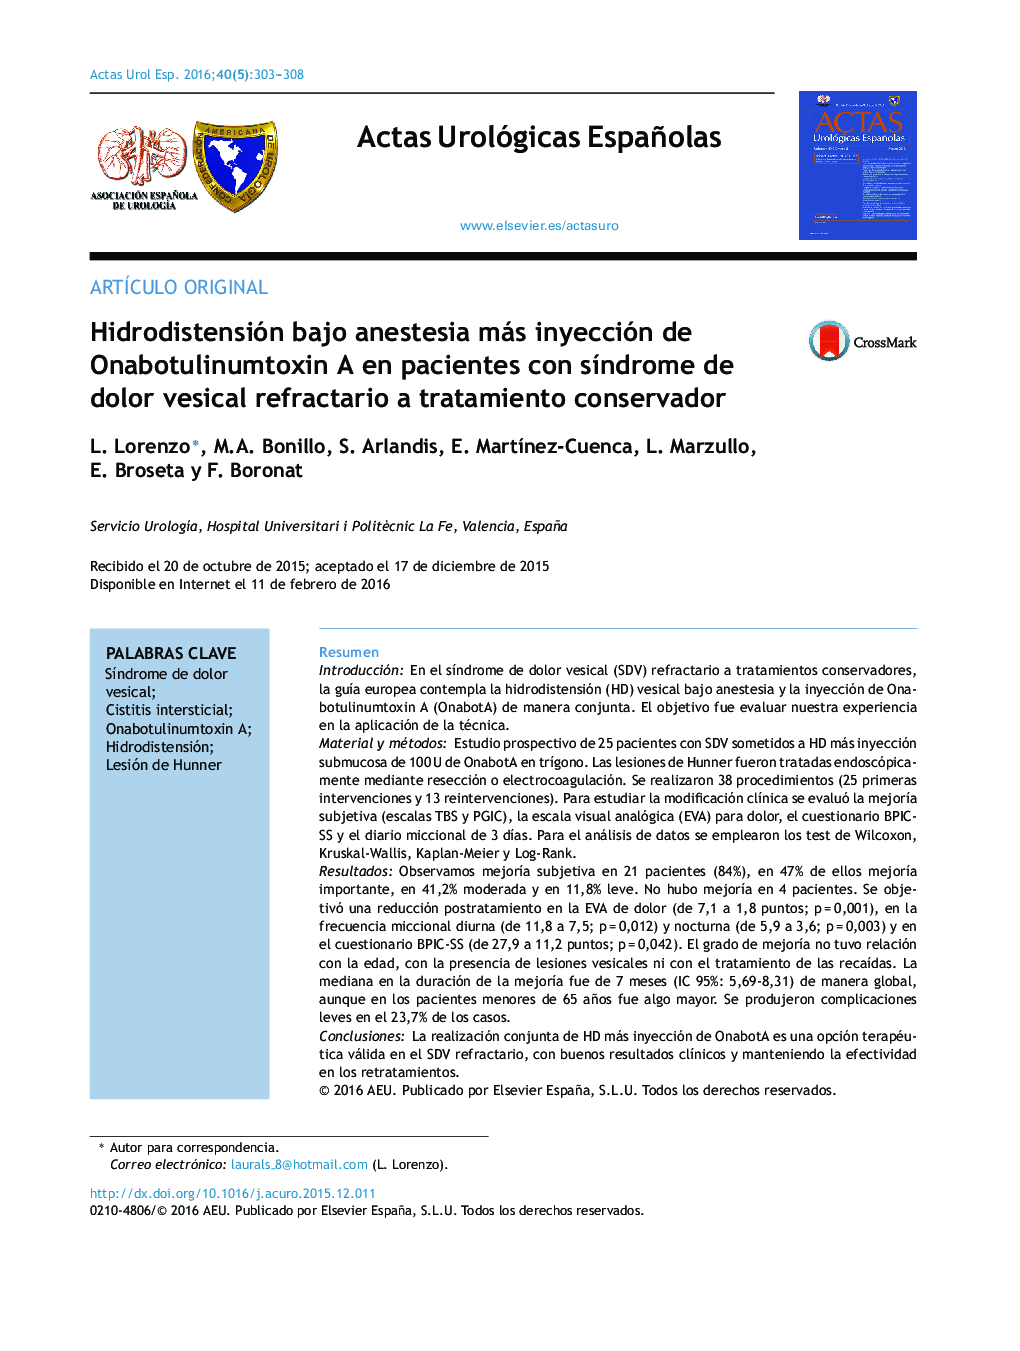 Hidrodistensión bajo anestesia más inyección de Onabotulinumtoxin A en pacientes con síndrome de dolor vesical refractario a tratamiento conservador